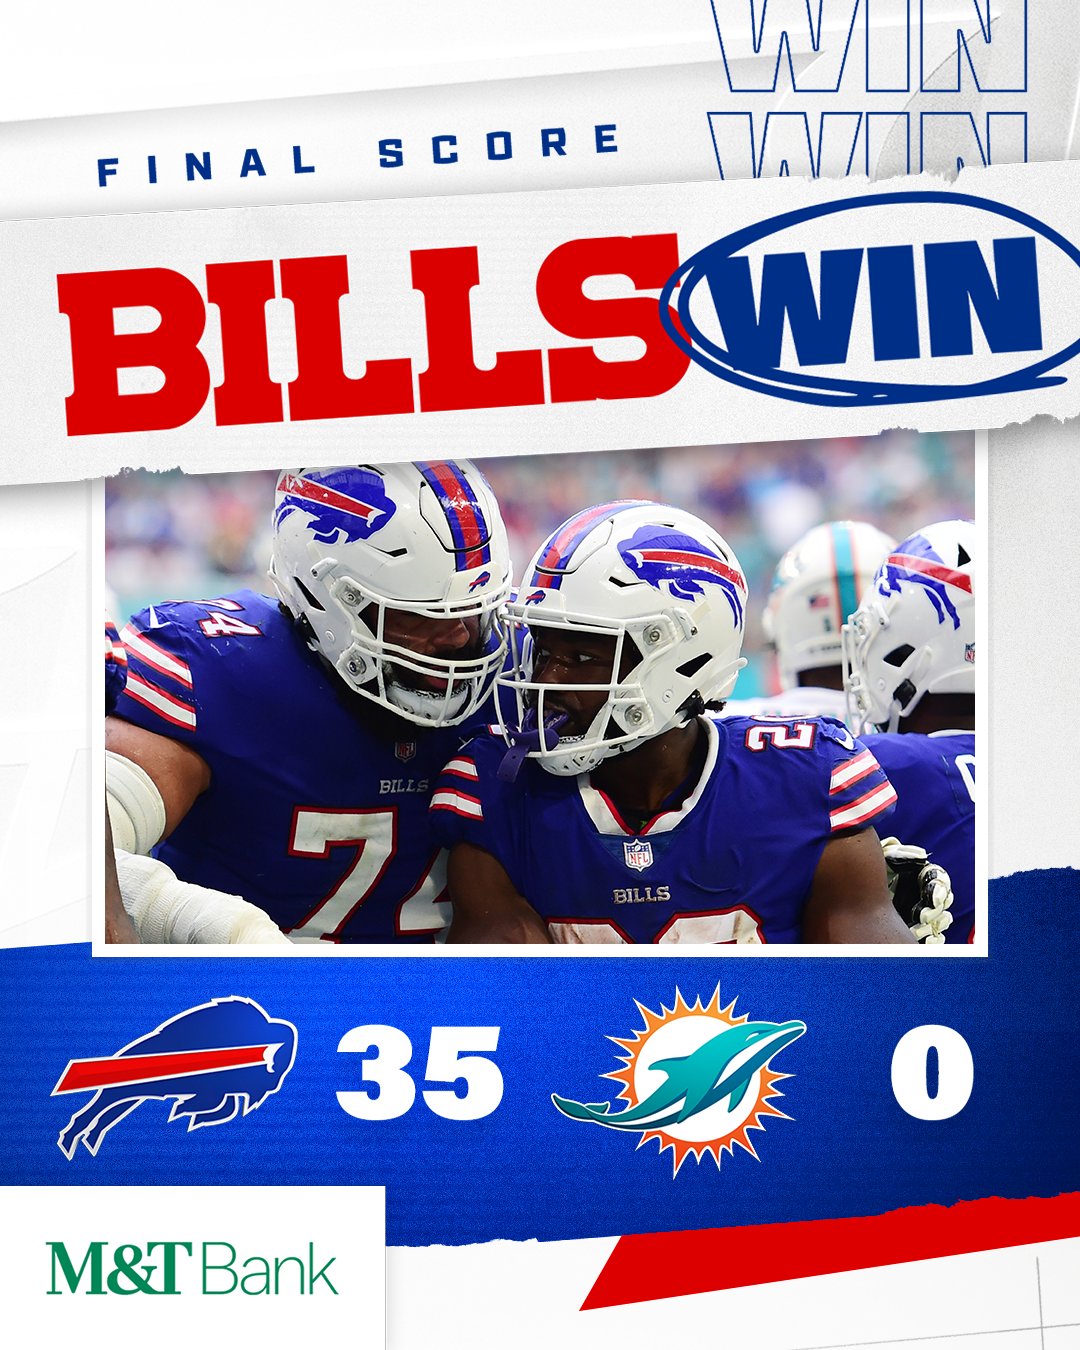 Buffalo on Twitter: WIN! #BUFvsMIA | #BillsMafia https://t.co/JIBlmwlM4K" / Twitter